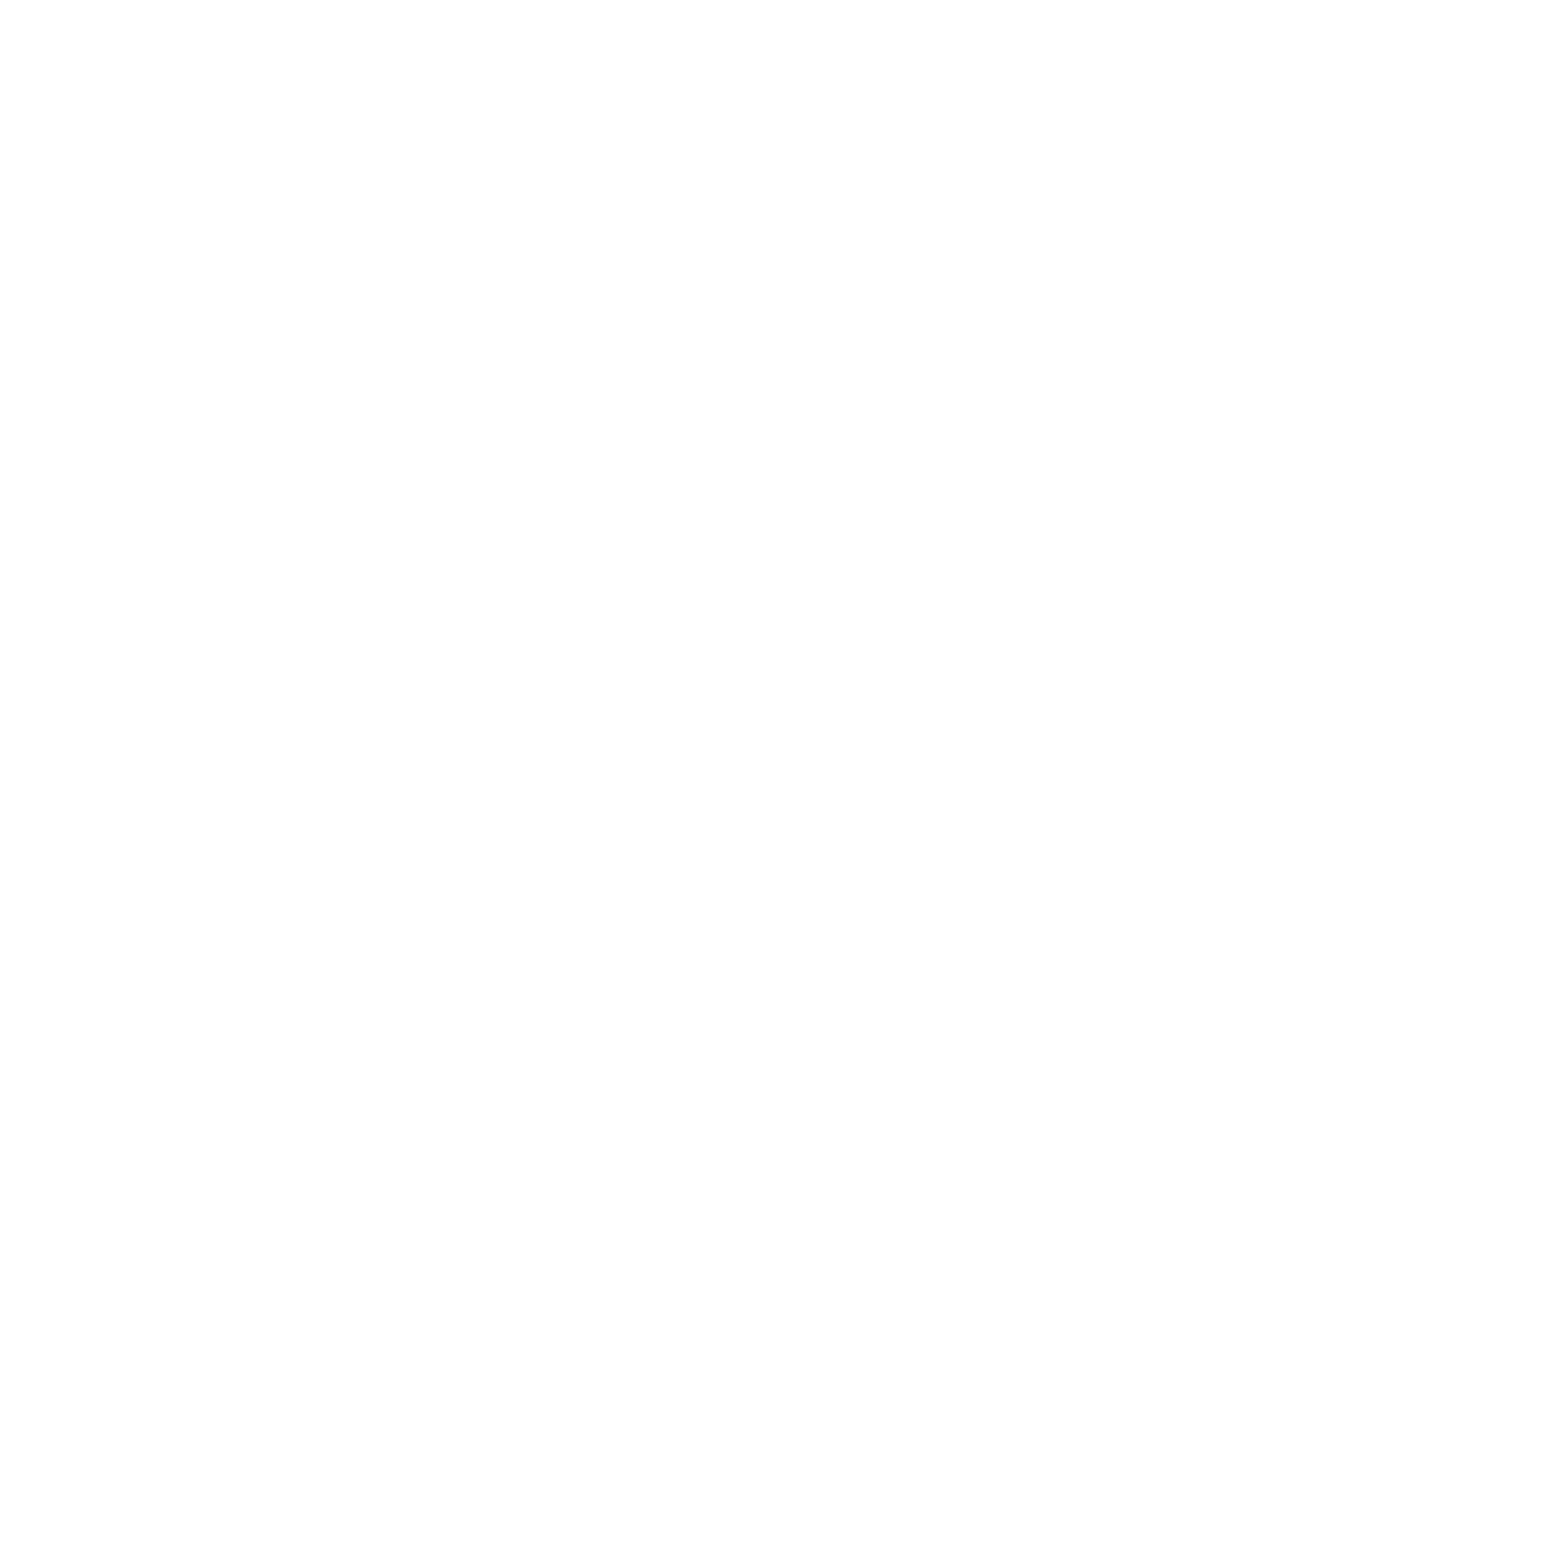 MDxHealth logo pour fonds sombres (PNG transparent)